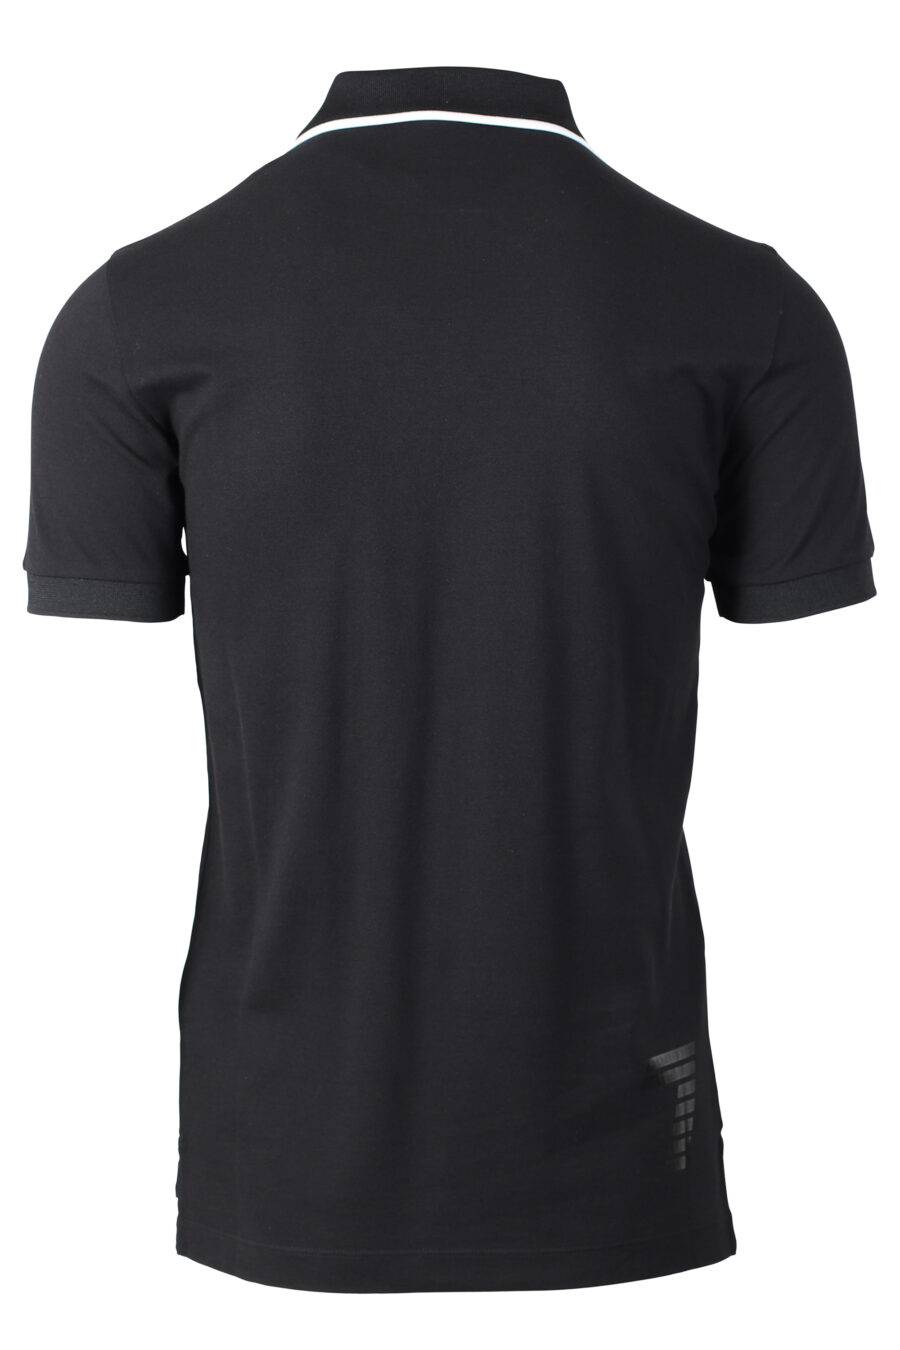 Schwarzes Polohemd mit Logoplakette und Kragen mit weißer Linie - IMG 4630